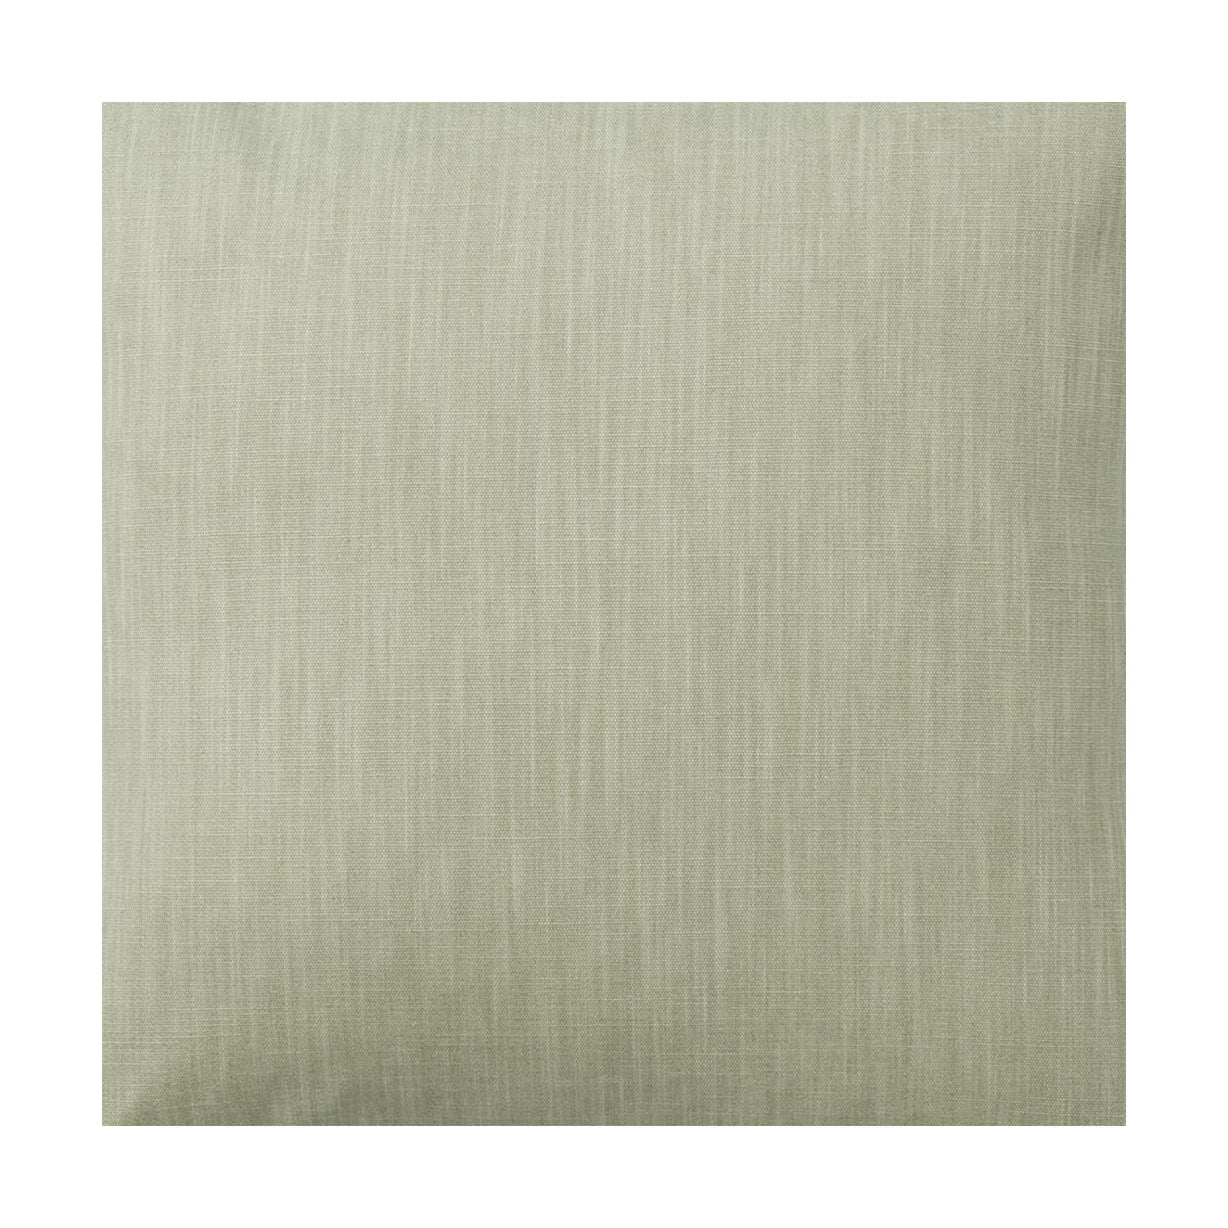 Largeur de tissu Spira Klotz 150 cm (prix par mètre), vert poussiéreux